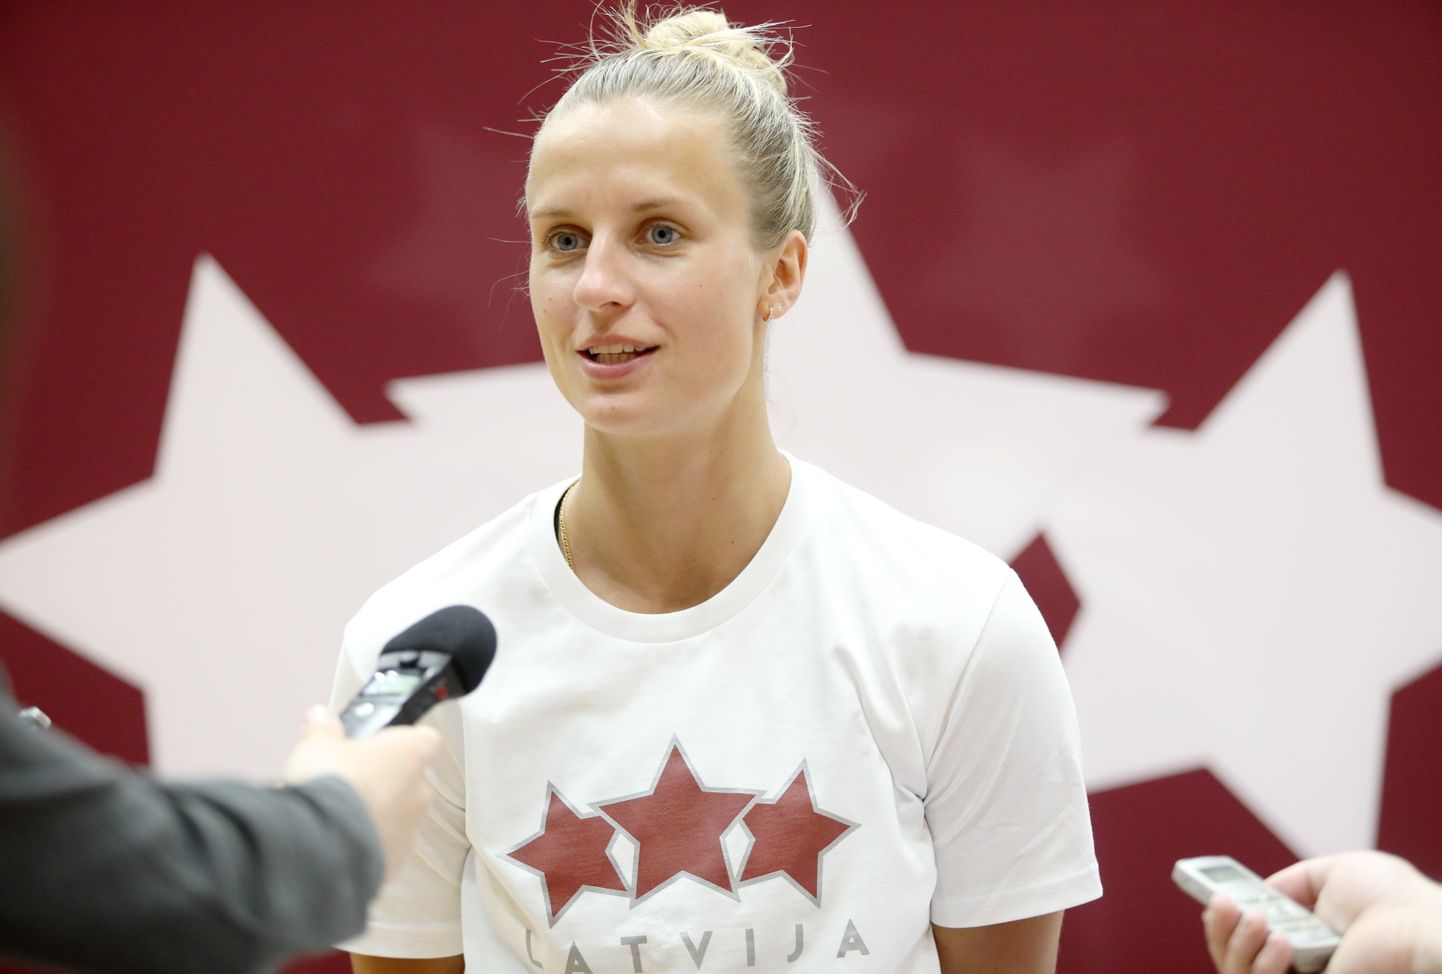 Latvijas sieviešu basketbola izlases kandidāte Kitija Laksa atbild uz žurnālistu jautājumiem pēc Latvijas sieviešu valstsvienības atklātā treniņa.